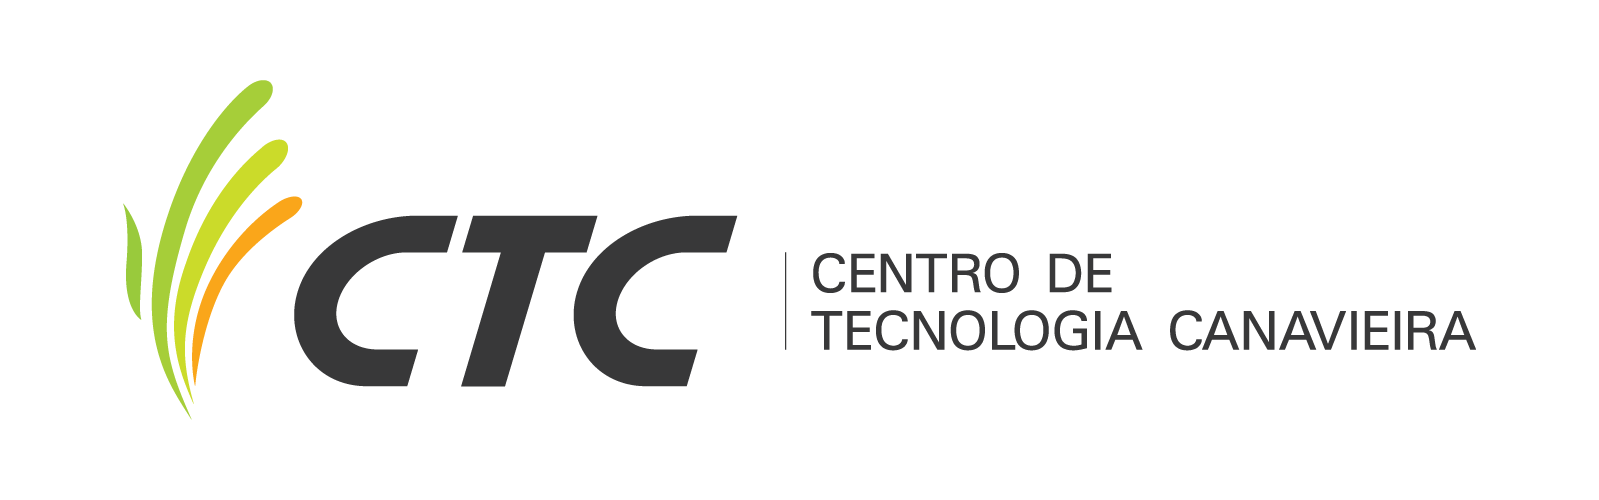 Centro de Tecnologia Canavieira